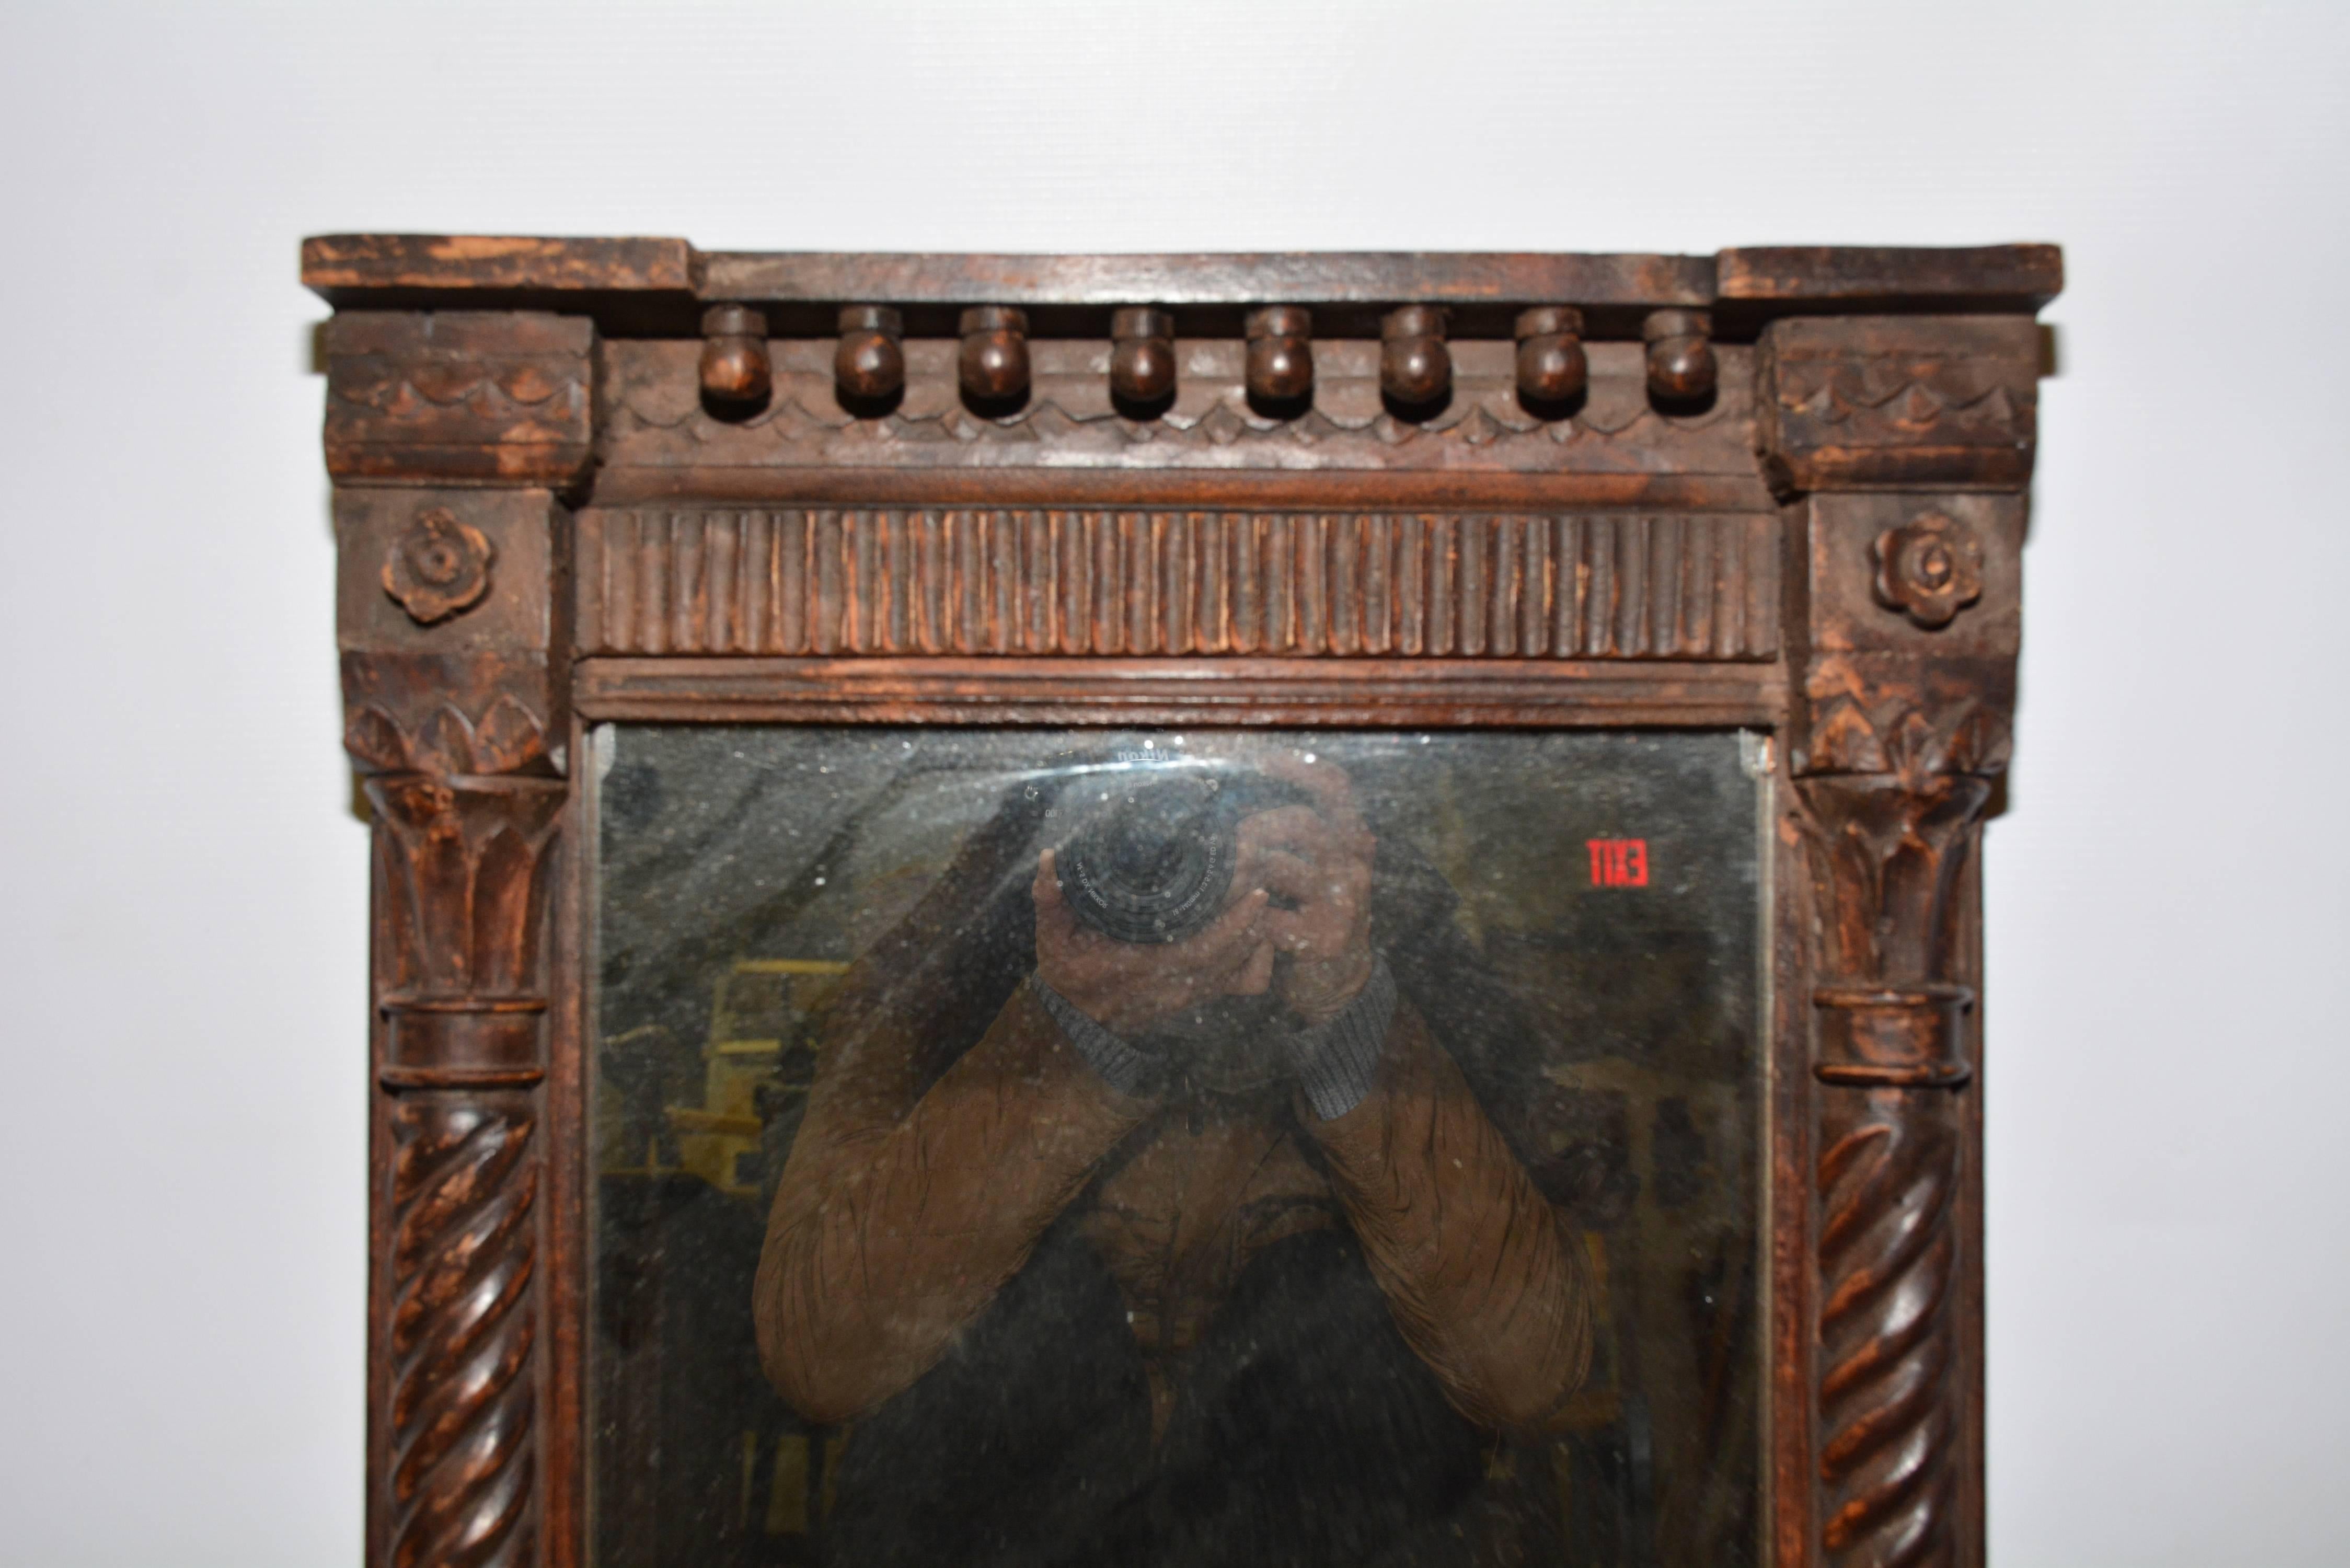 L'ancien miroir néoclassique sculpté à la main est en bois teinté et présente un sommet à capuchon avec une rangée de boules attachées et un panneau cannelé. Les côtés sont ornés de pilastres classiques tordus, de chapiteaux et de bases. Le fond est